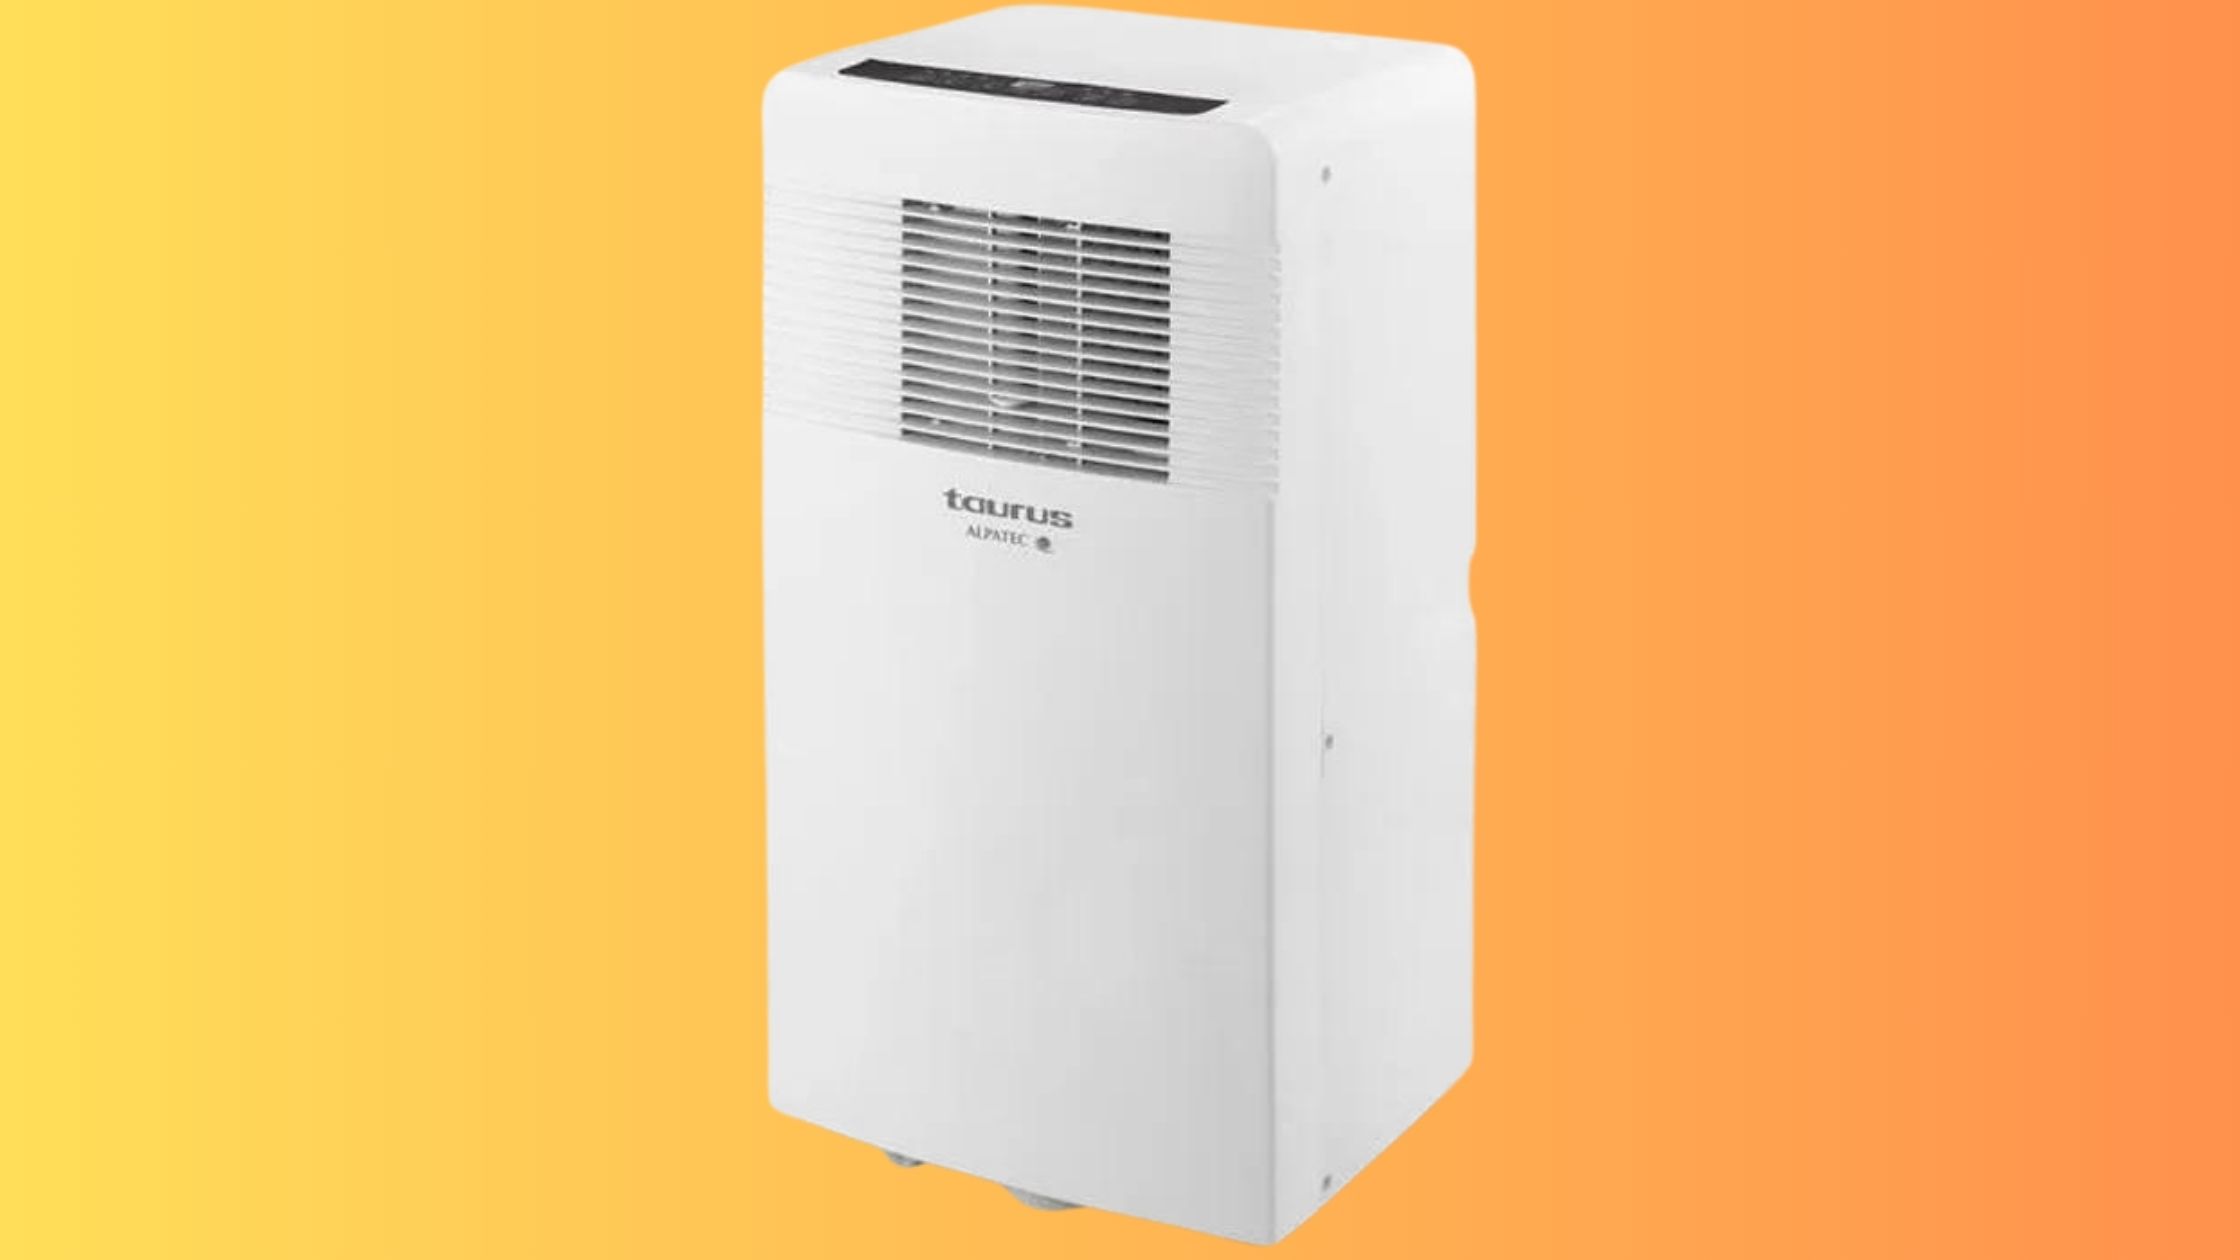 Grâce au climatiseur mobile TAURUS, en promotion, vous profiterez d'une température idéale durant tout l'été ! © Cdiscount